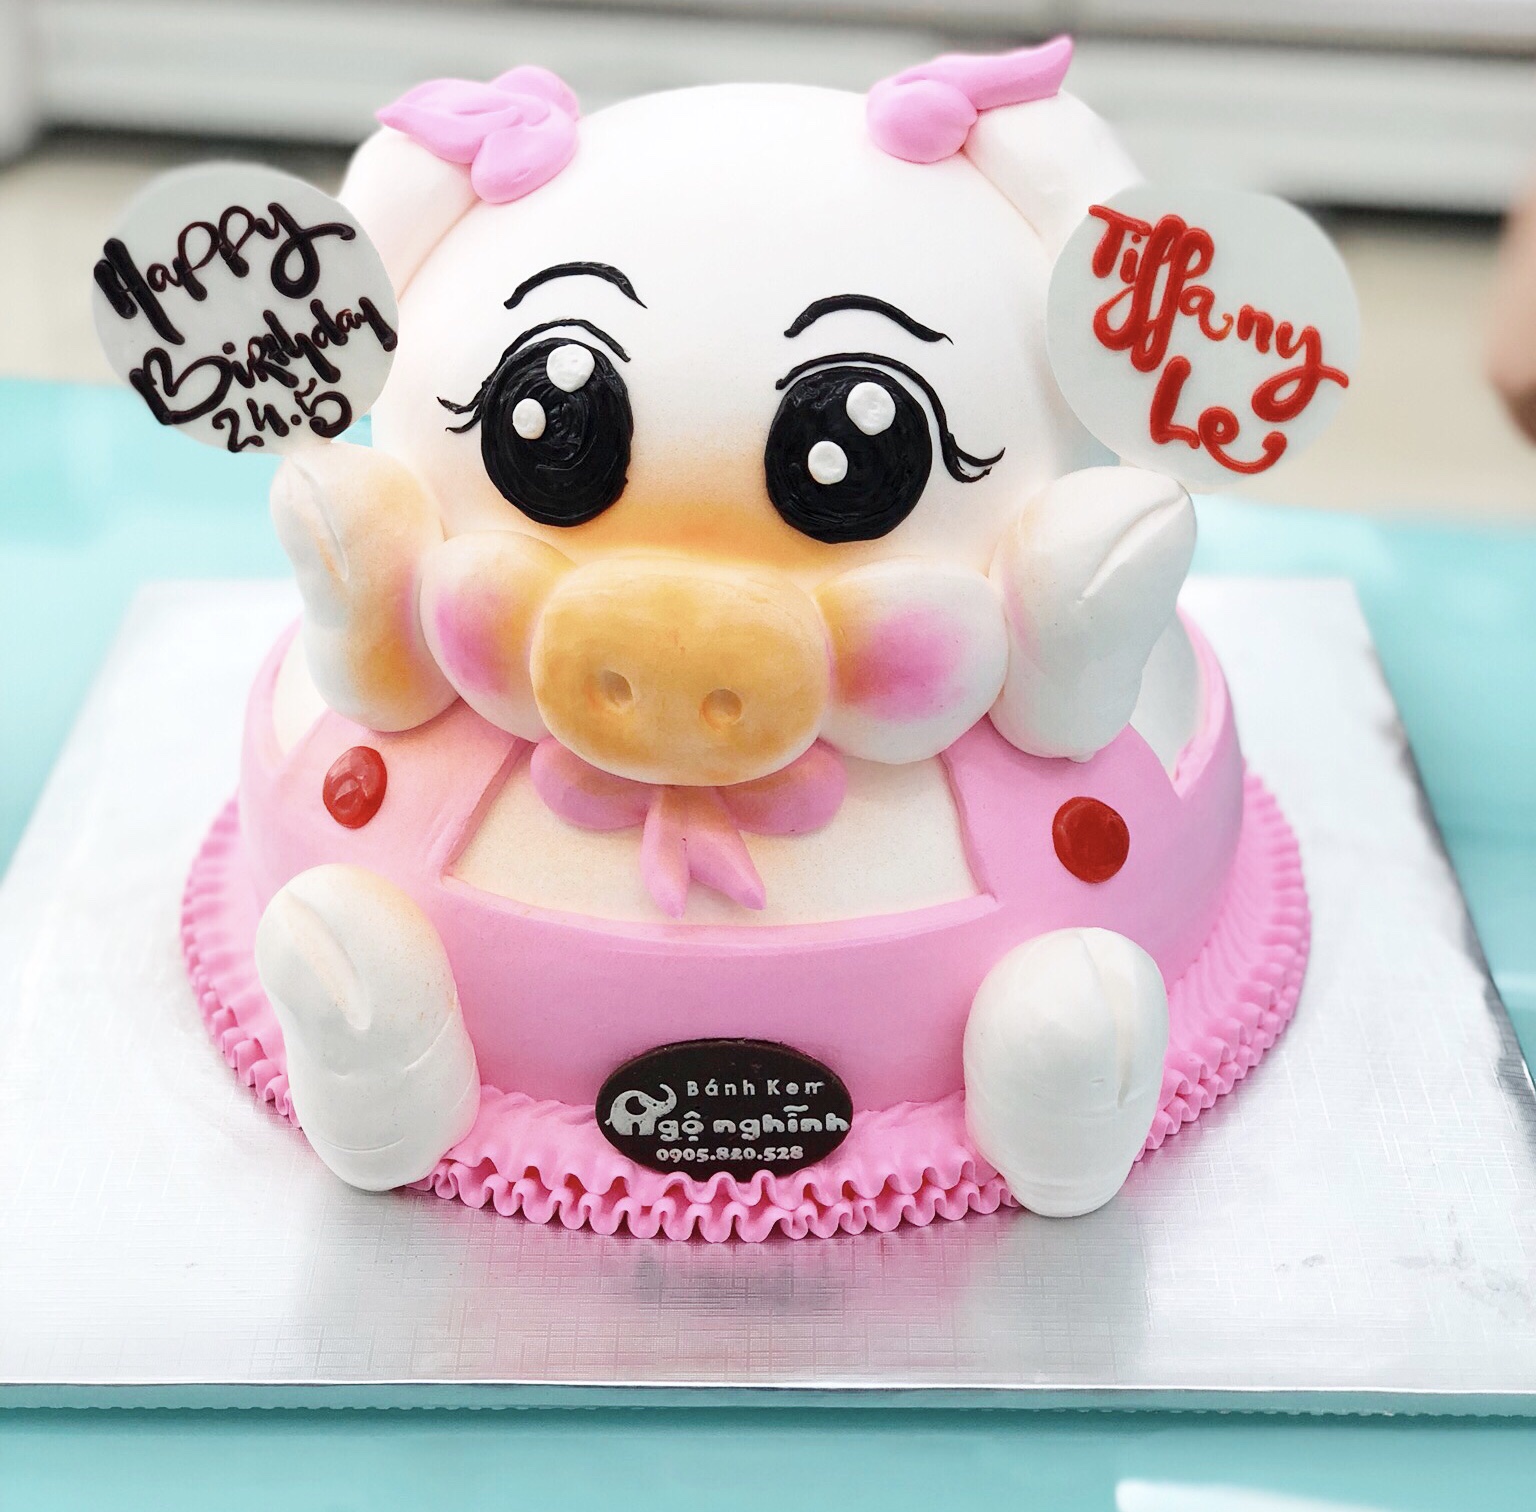 Bánh sinh nhật con lợn đẹp nhất tặng bé gái tuổi Hợi - YouTube